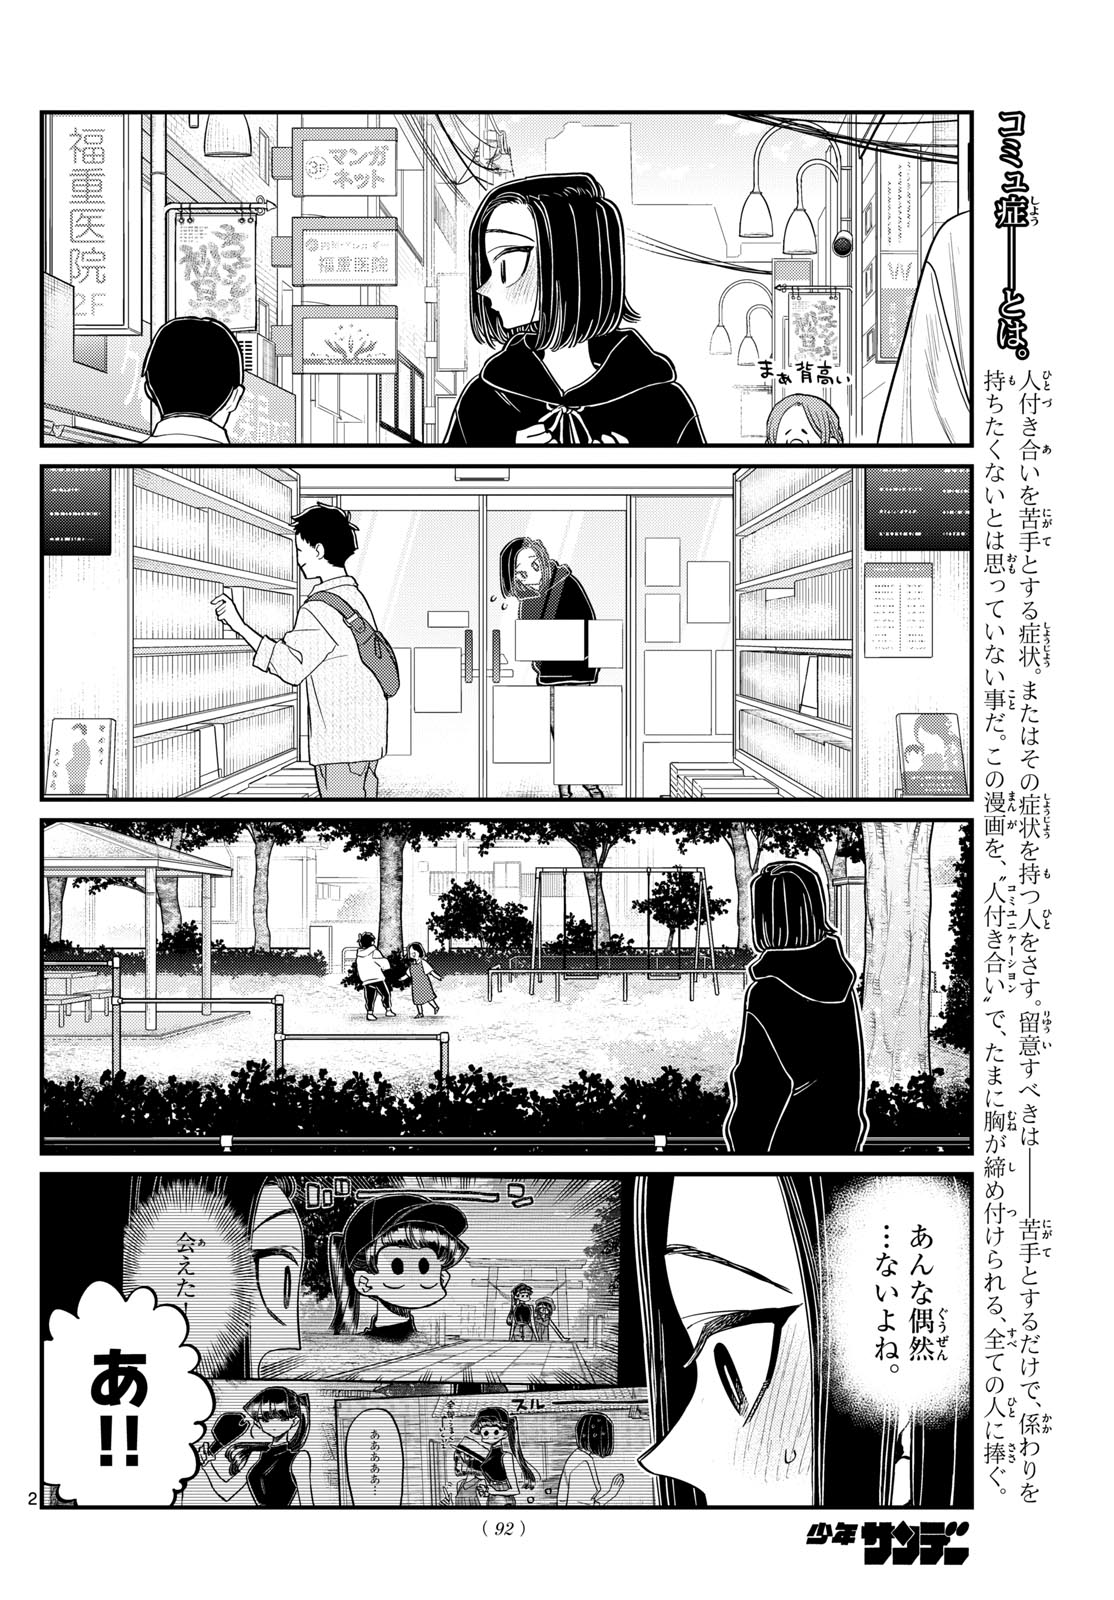 Komi-san wa Komyushou Desu - Chapter 435 - Page 2